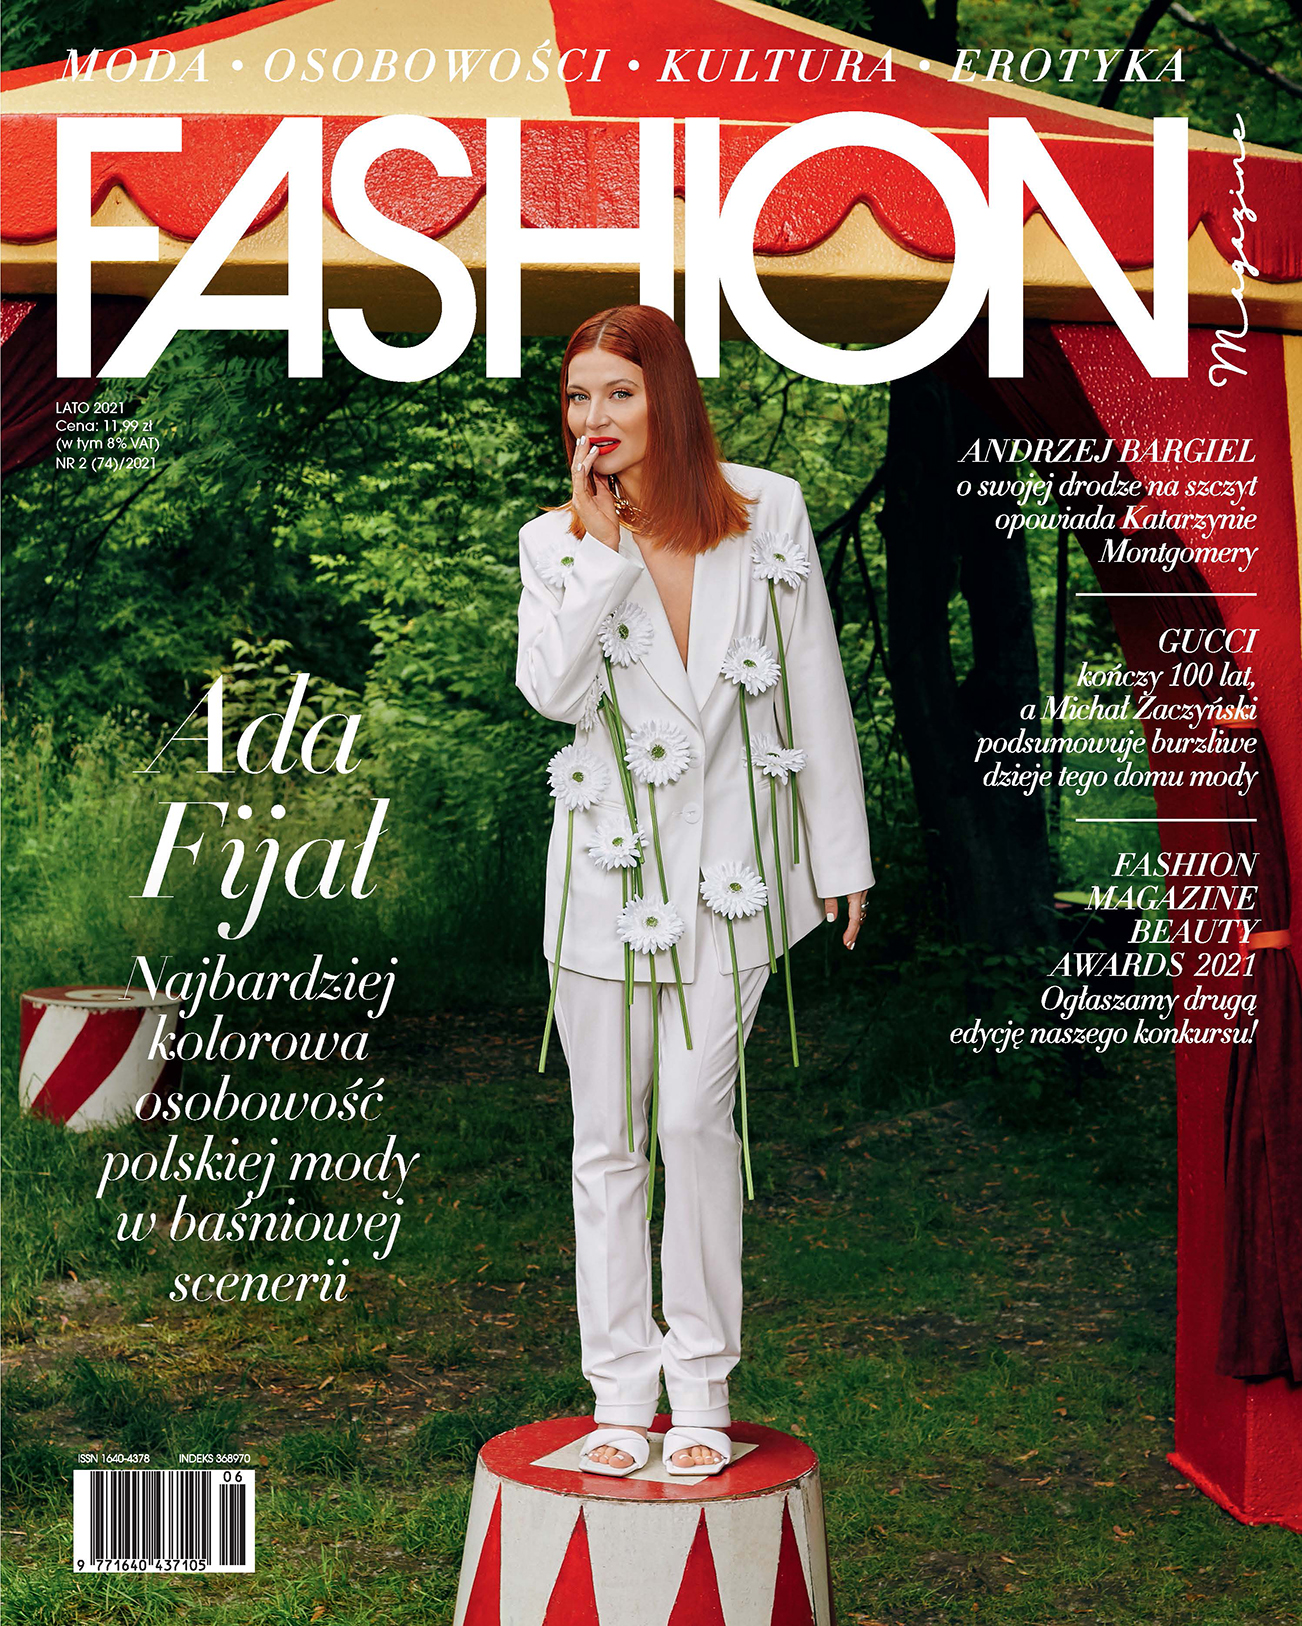 Ada Fijał na okładce letniego Fashion Magazine!